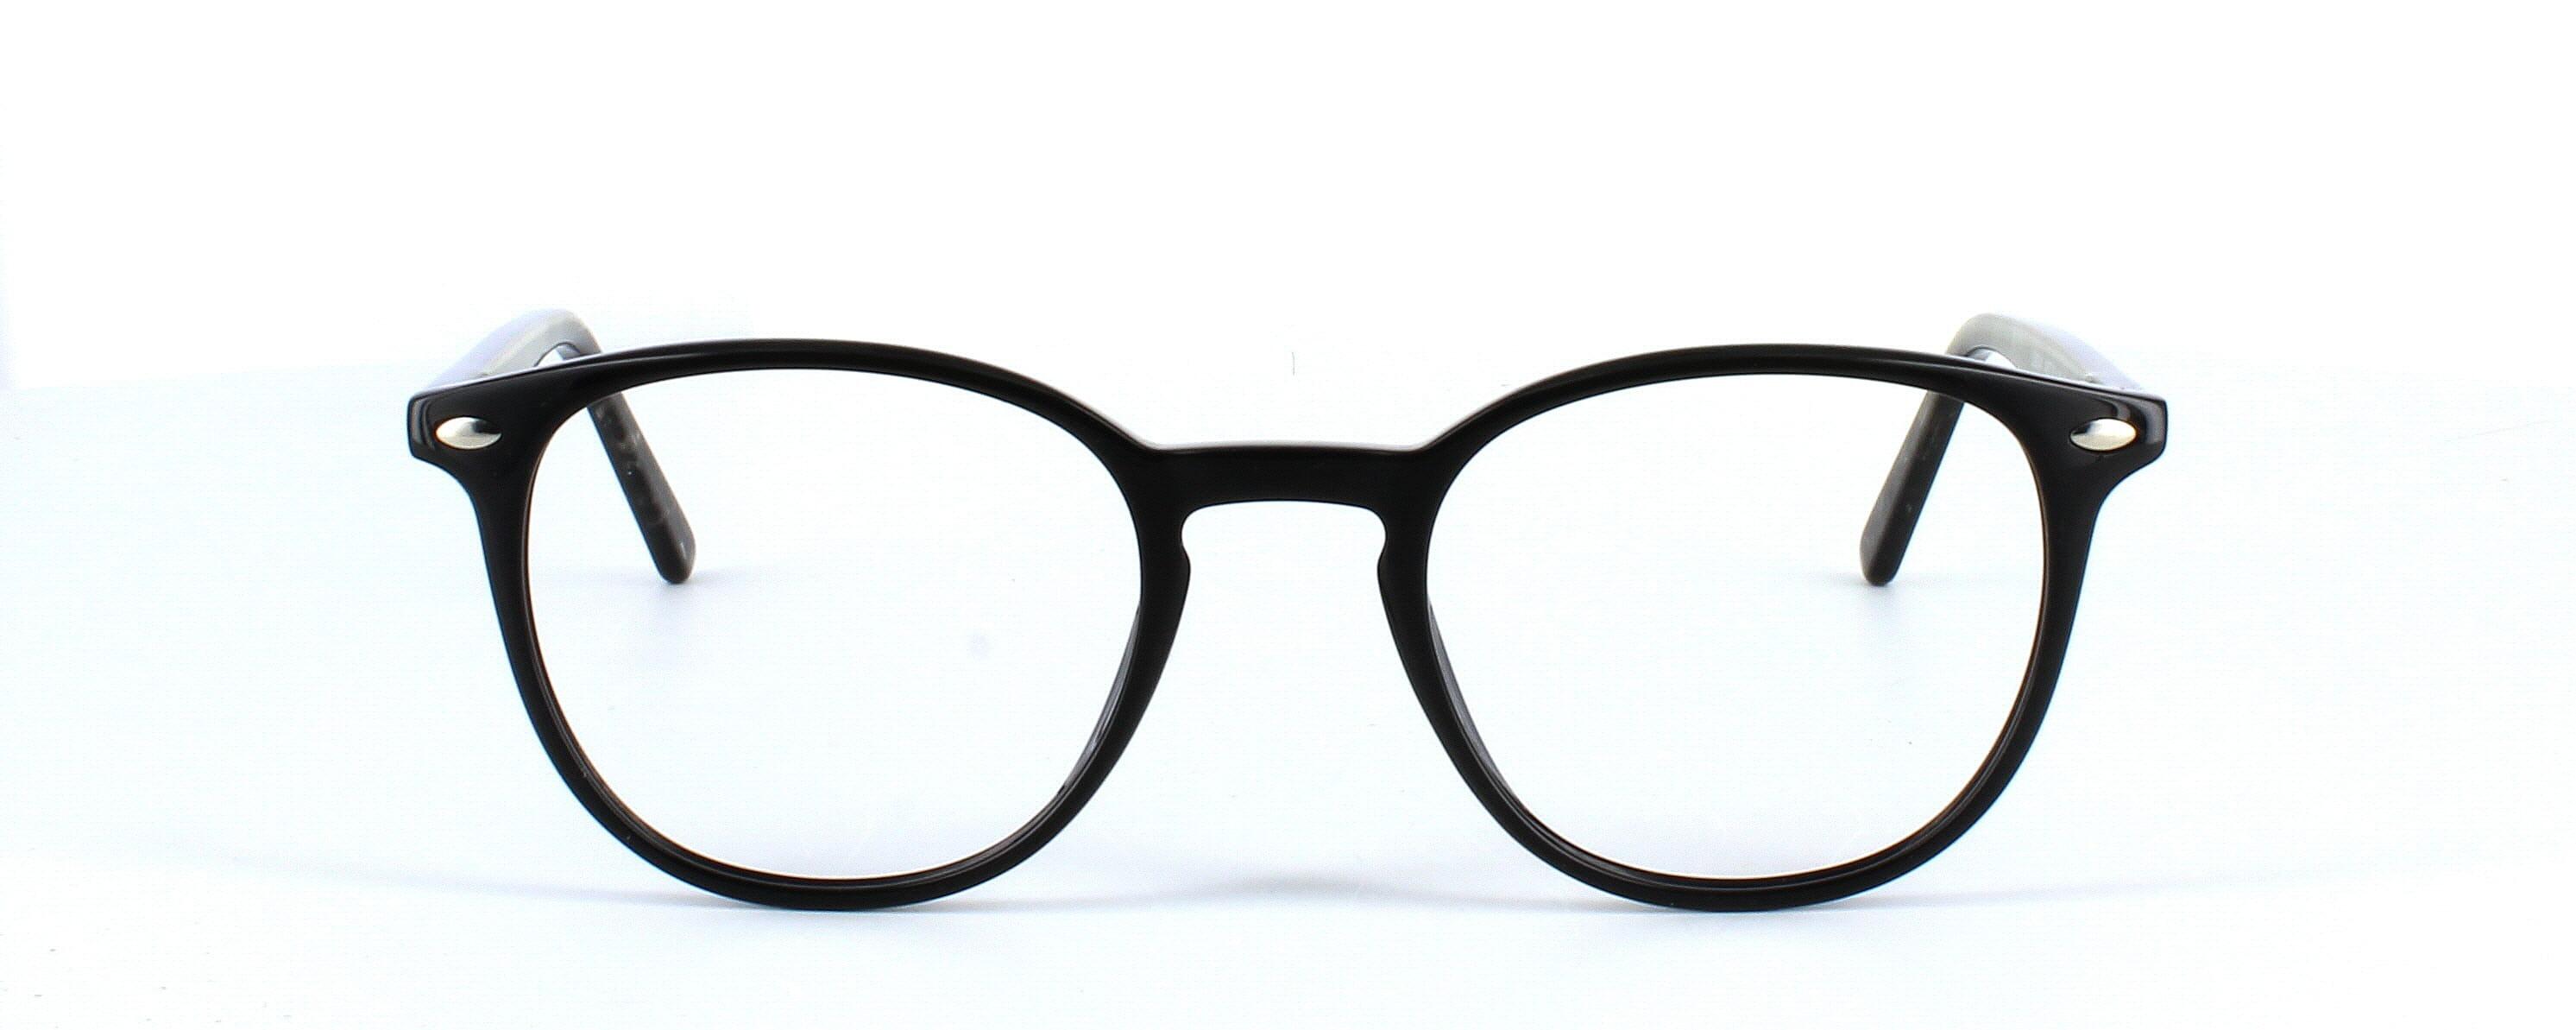 Canis - shiny black plastic round shaped glasses frame - image 2